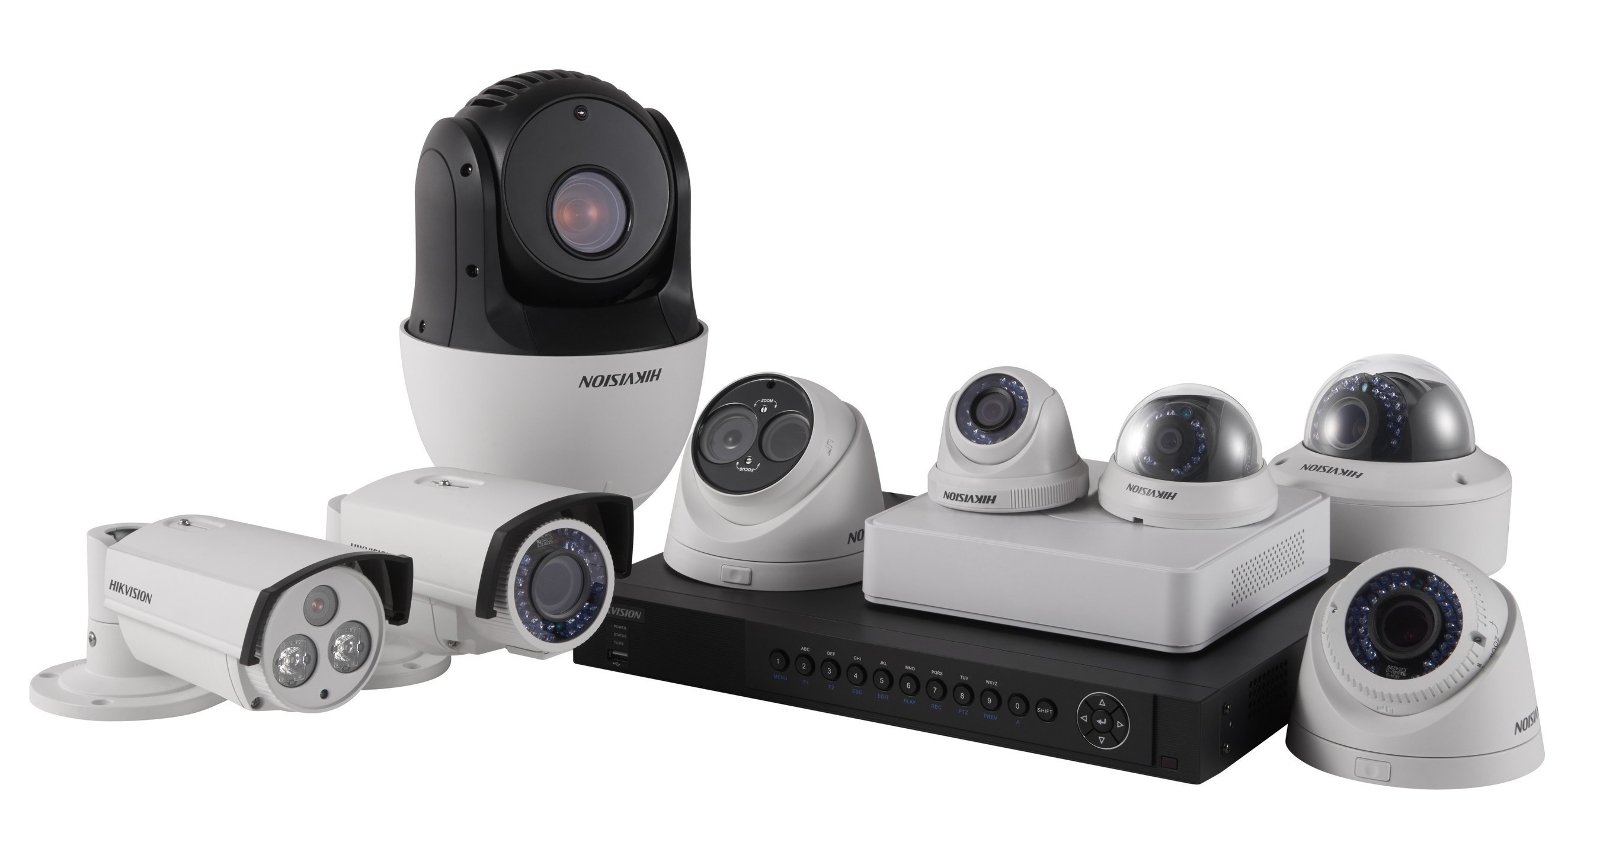 Caméra autonome urbaine, optimisez la vidéo surveillance de votre